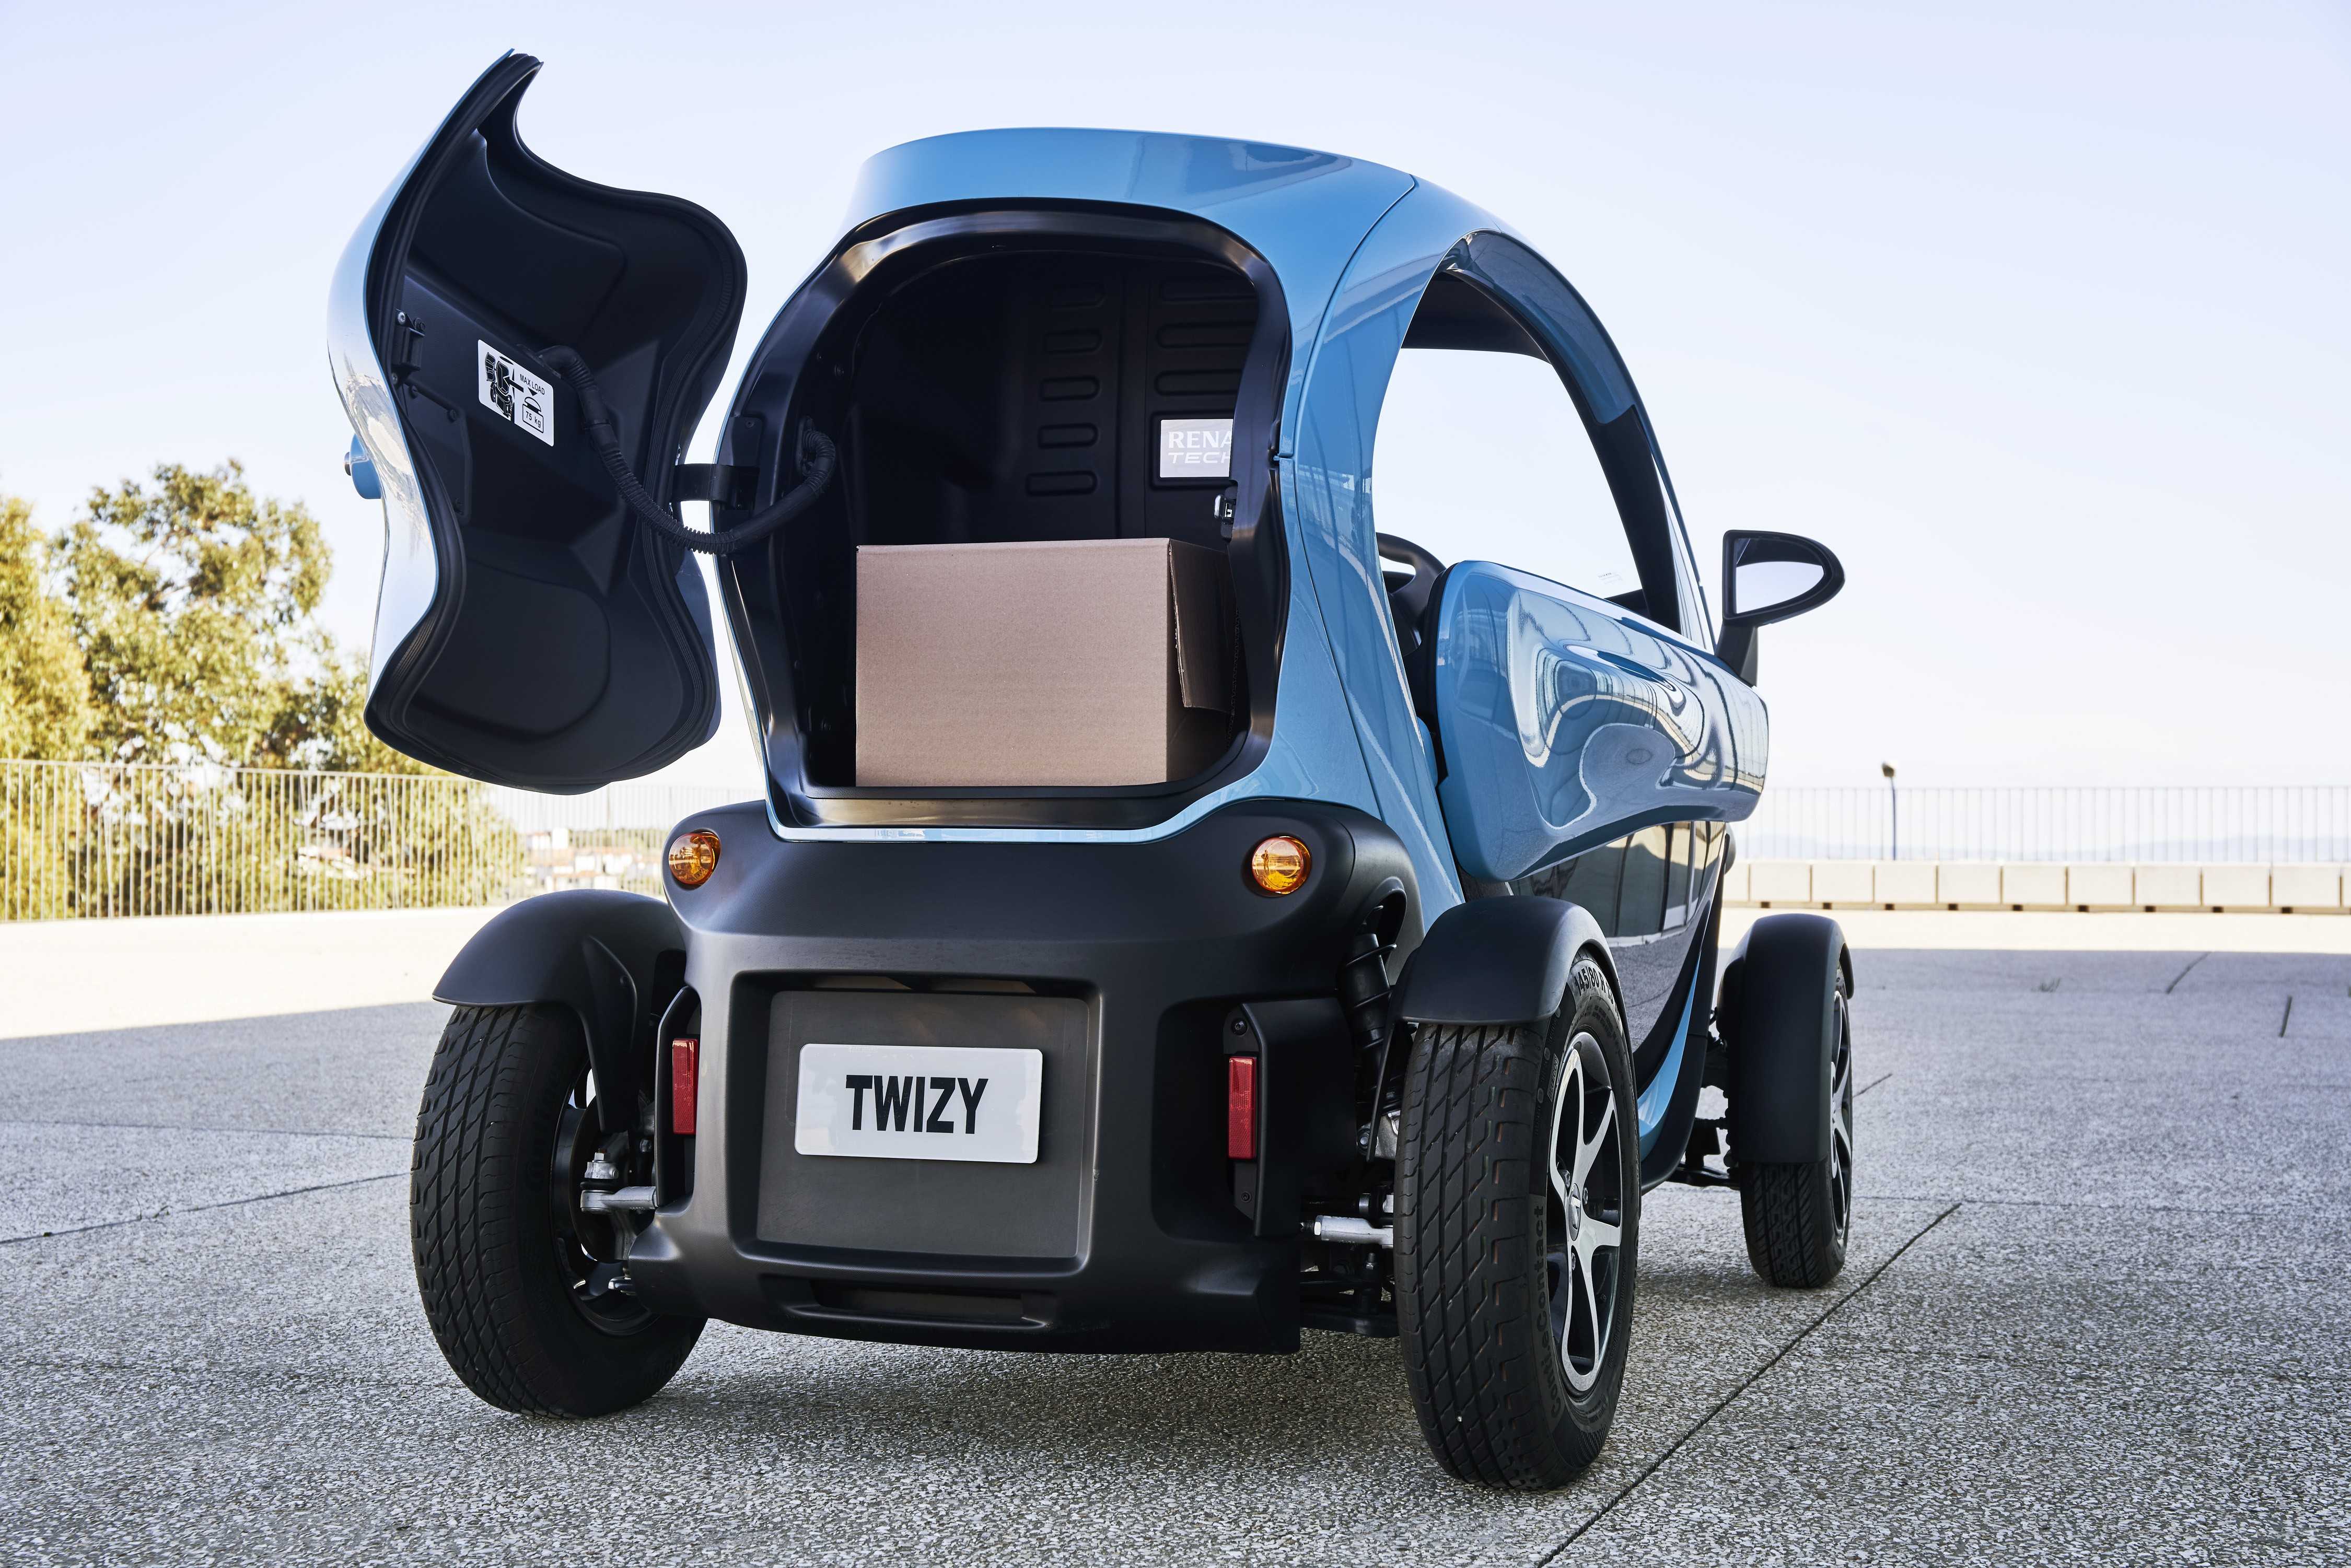 Компания renault представила электромобиль twizy с технологиями от формулы 1